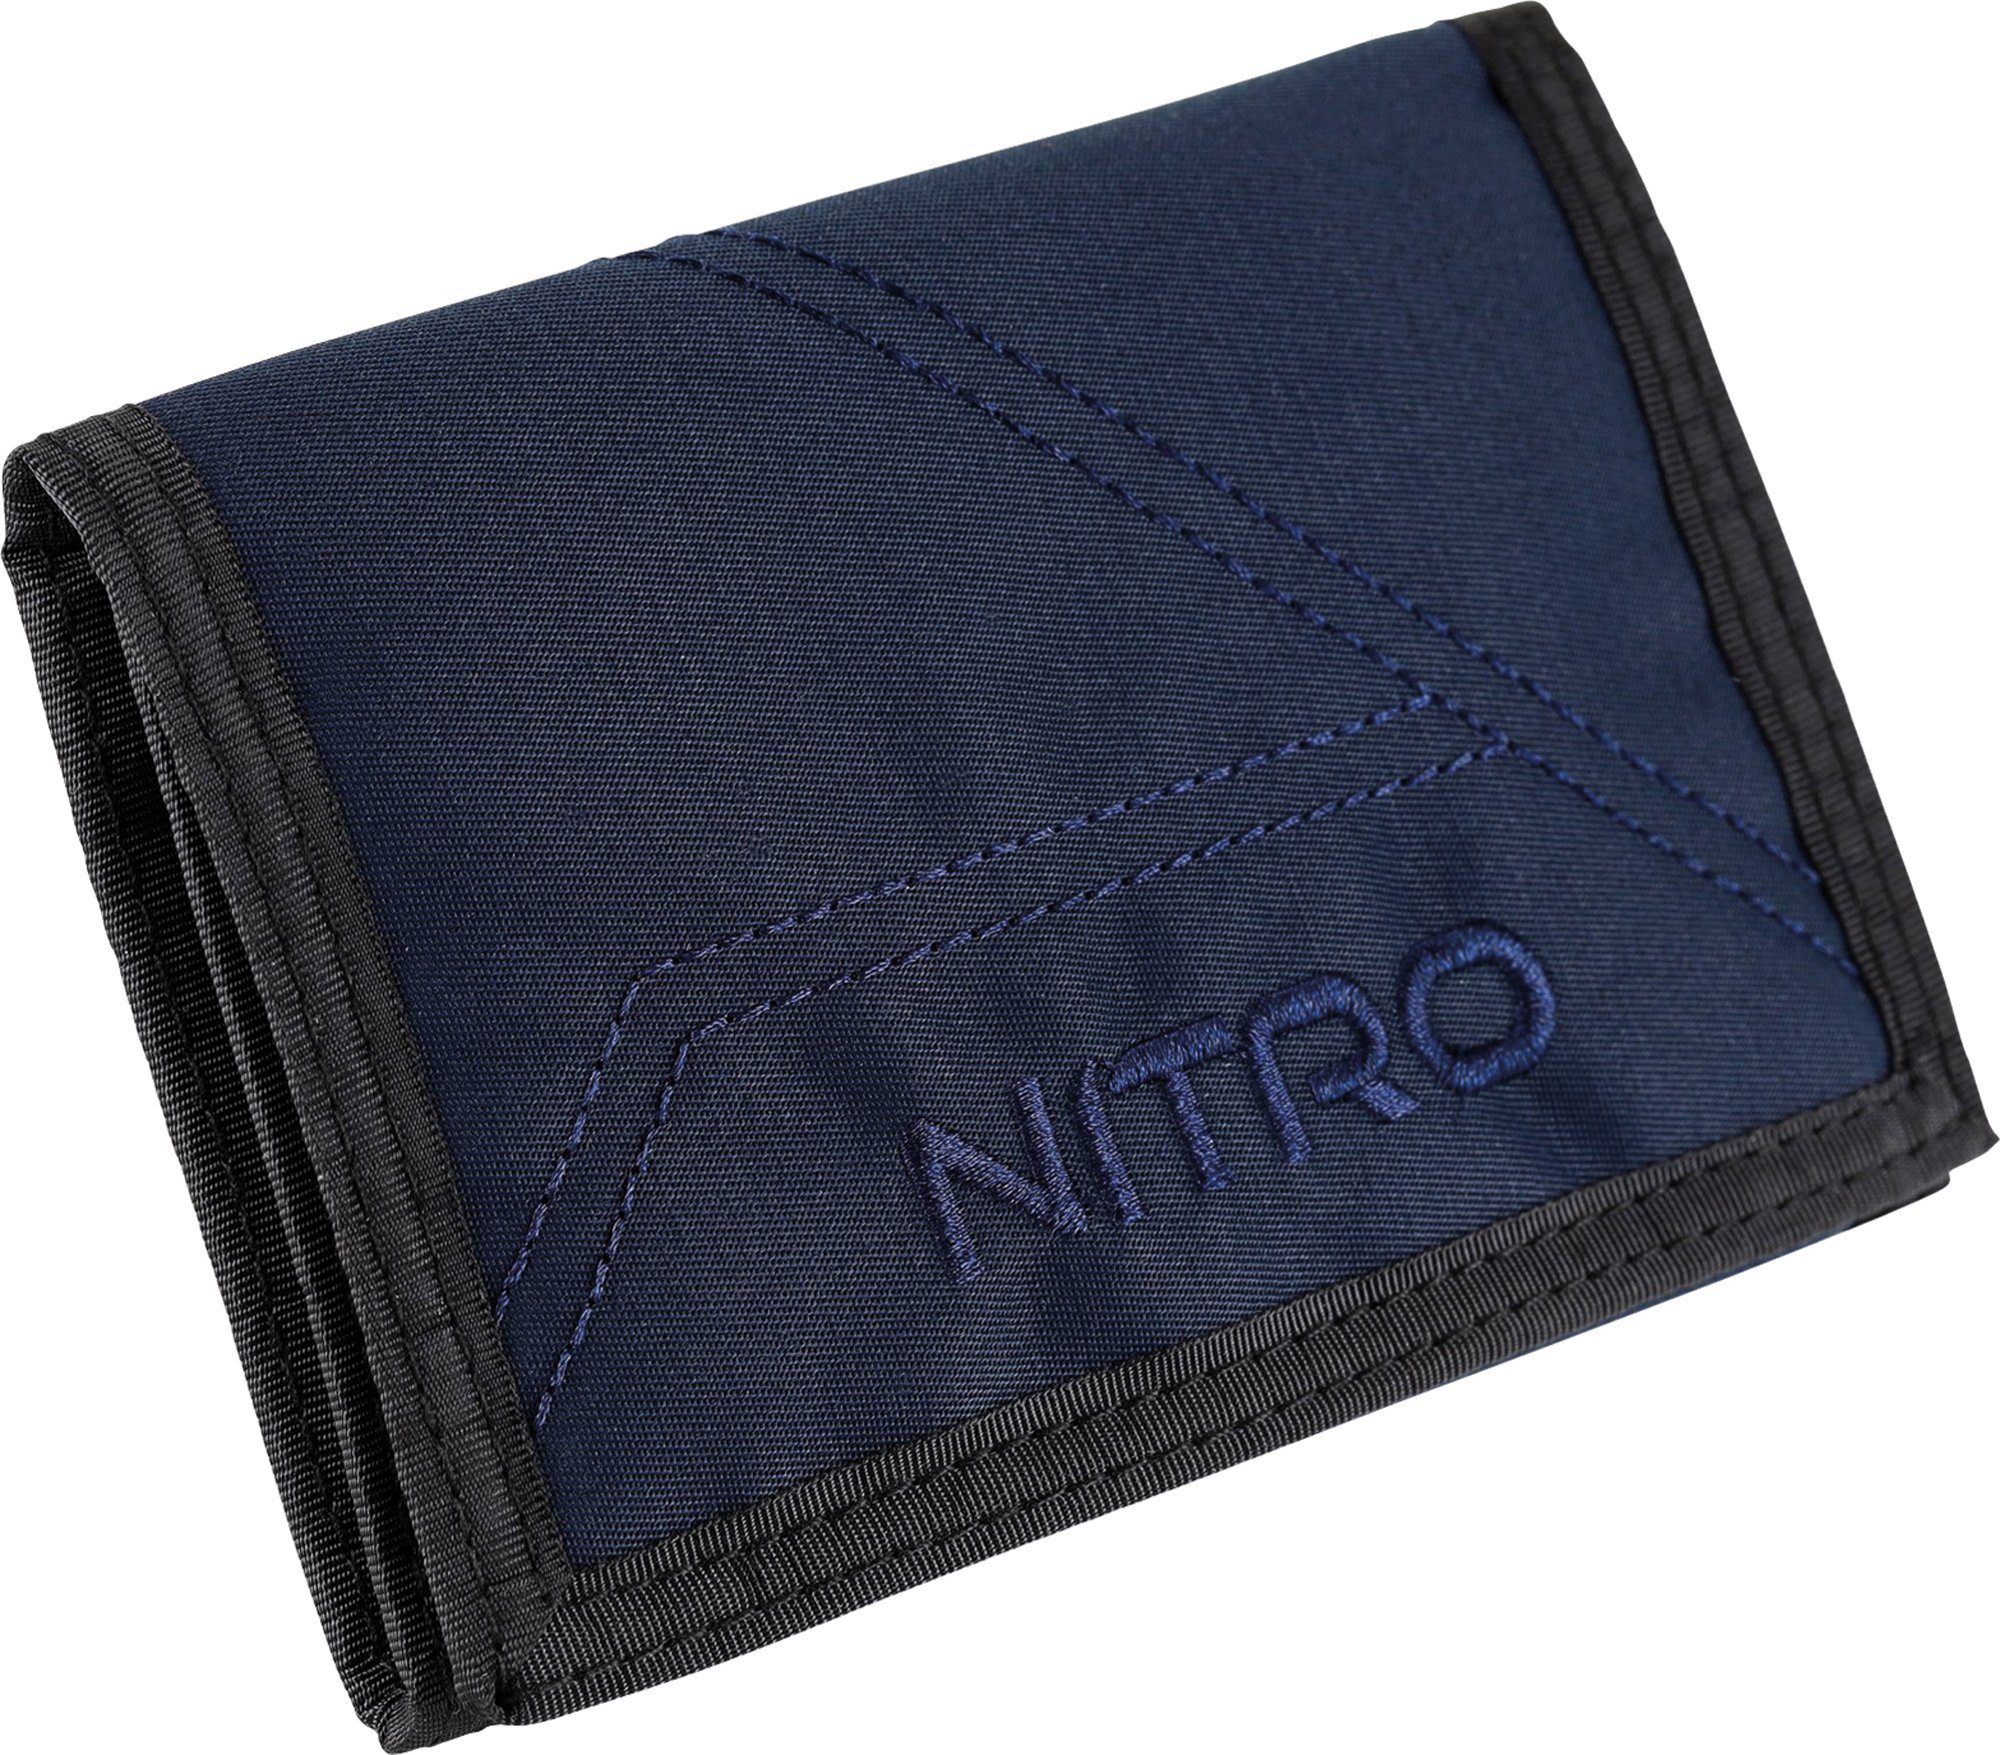 NITRO Geldbörse Wallet, Night Sky online kaufen | OTTO